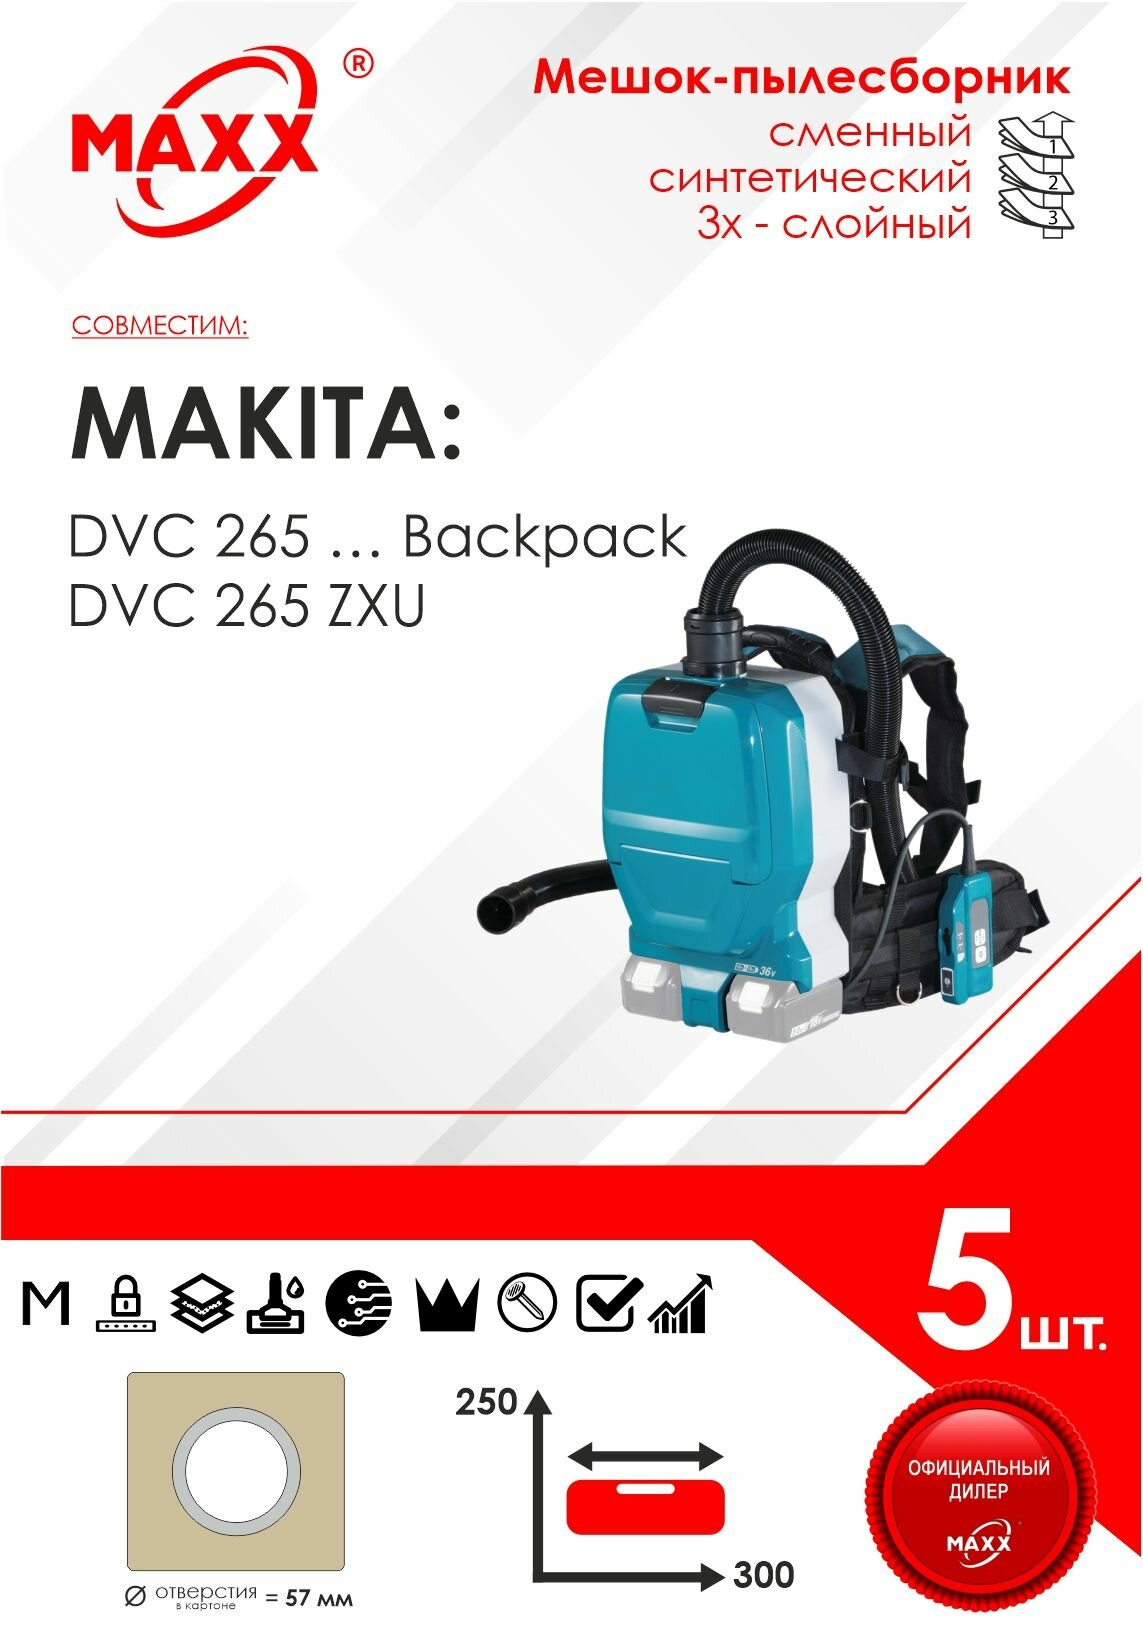 Мешок - пылесборник 5 шт. для пылесоса Makita DVC 265 ZXU